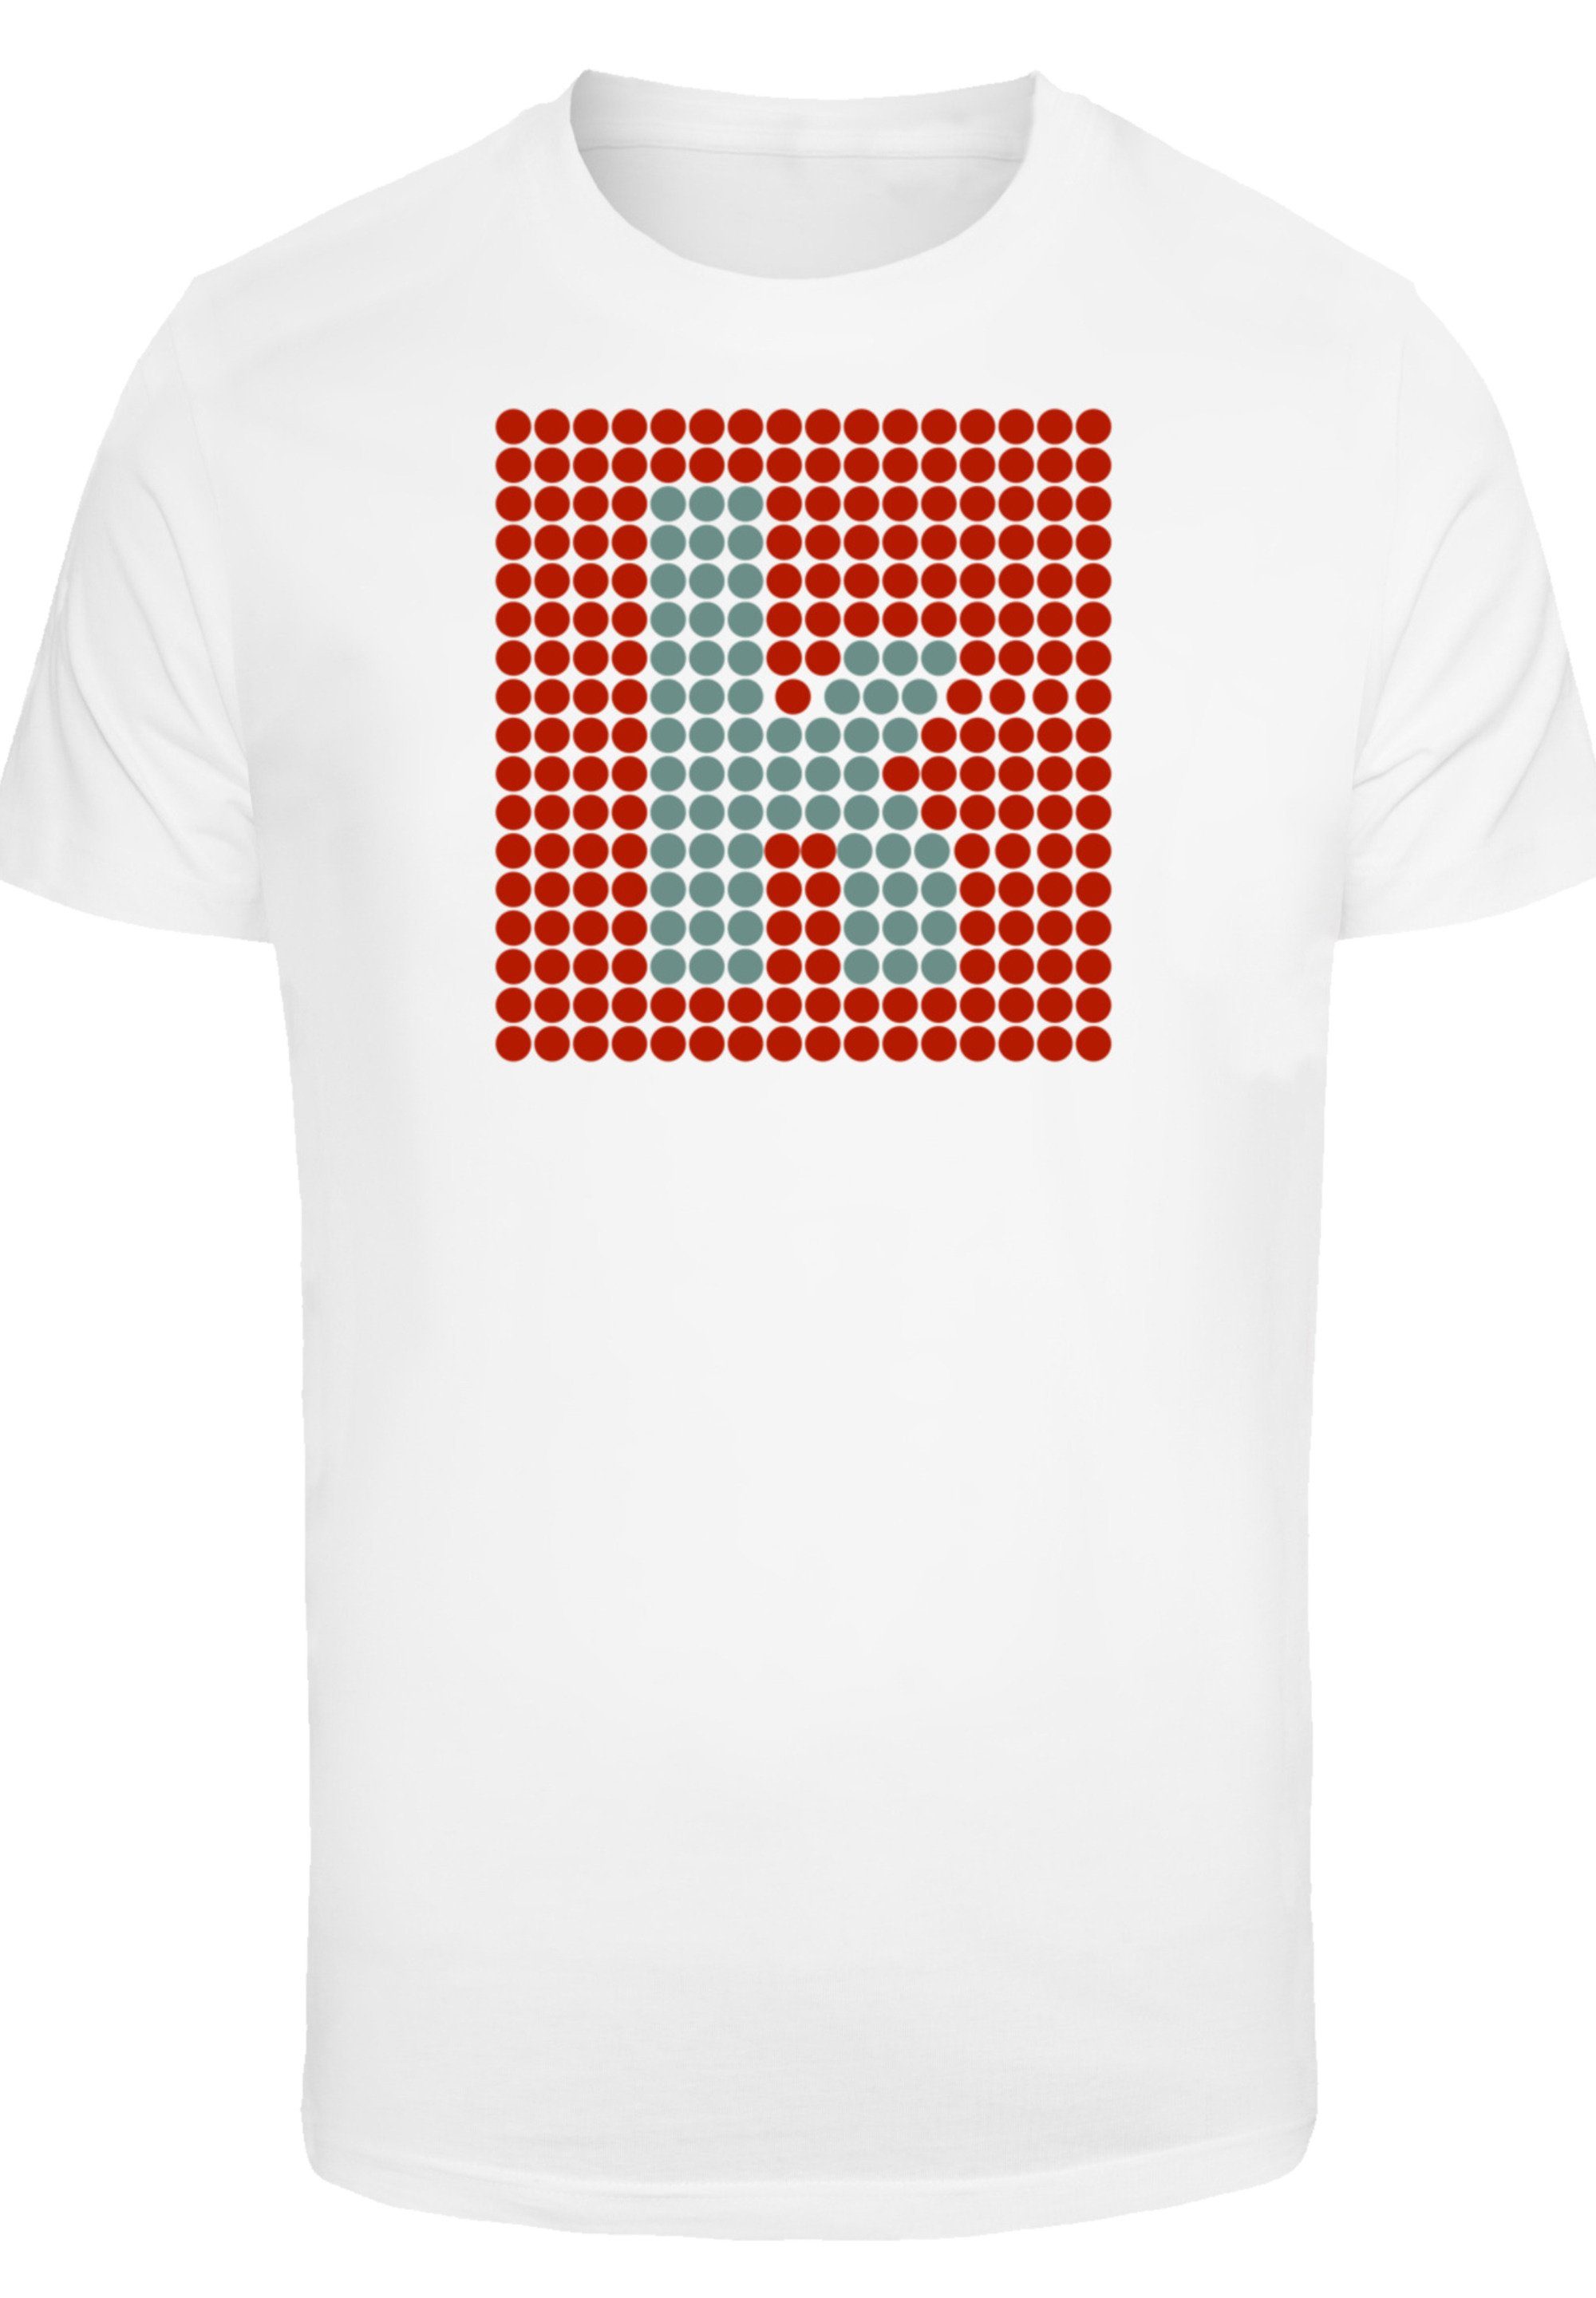 F4NT4STIC T-Shirt Print Killers The